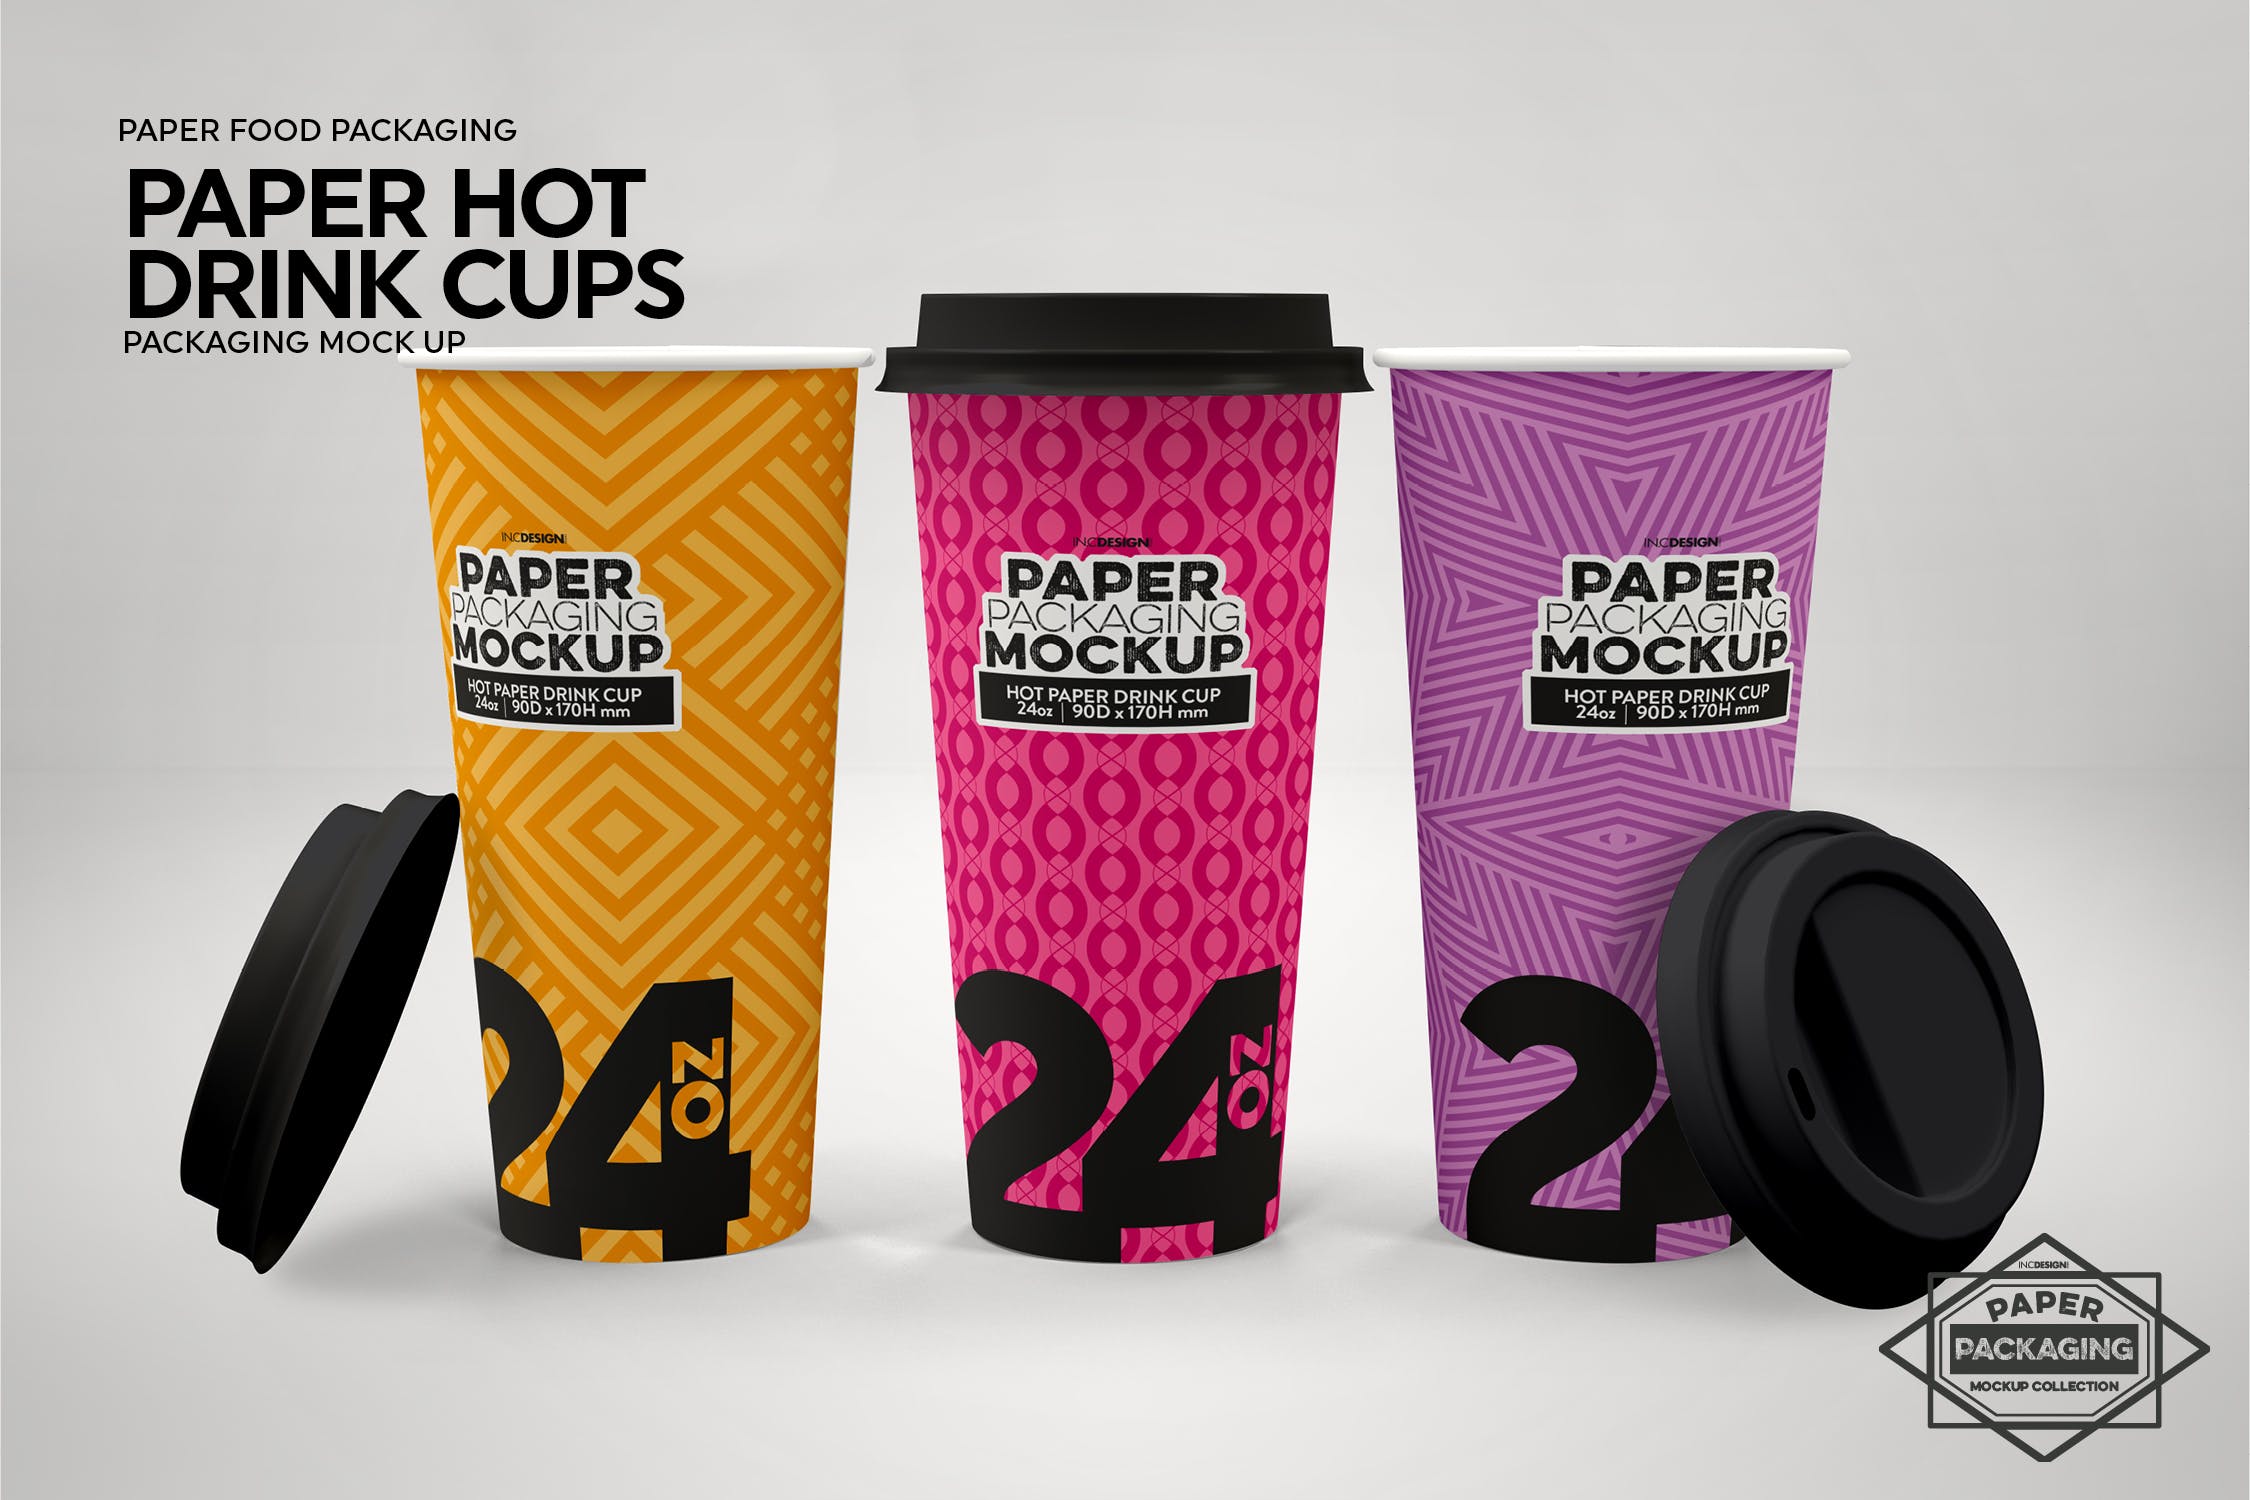 热饮一次性纸杯外观设计蚂蚁素材精选 Paper Hot Drink Cups Packaging Mockup插图(4)